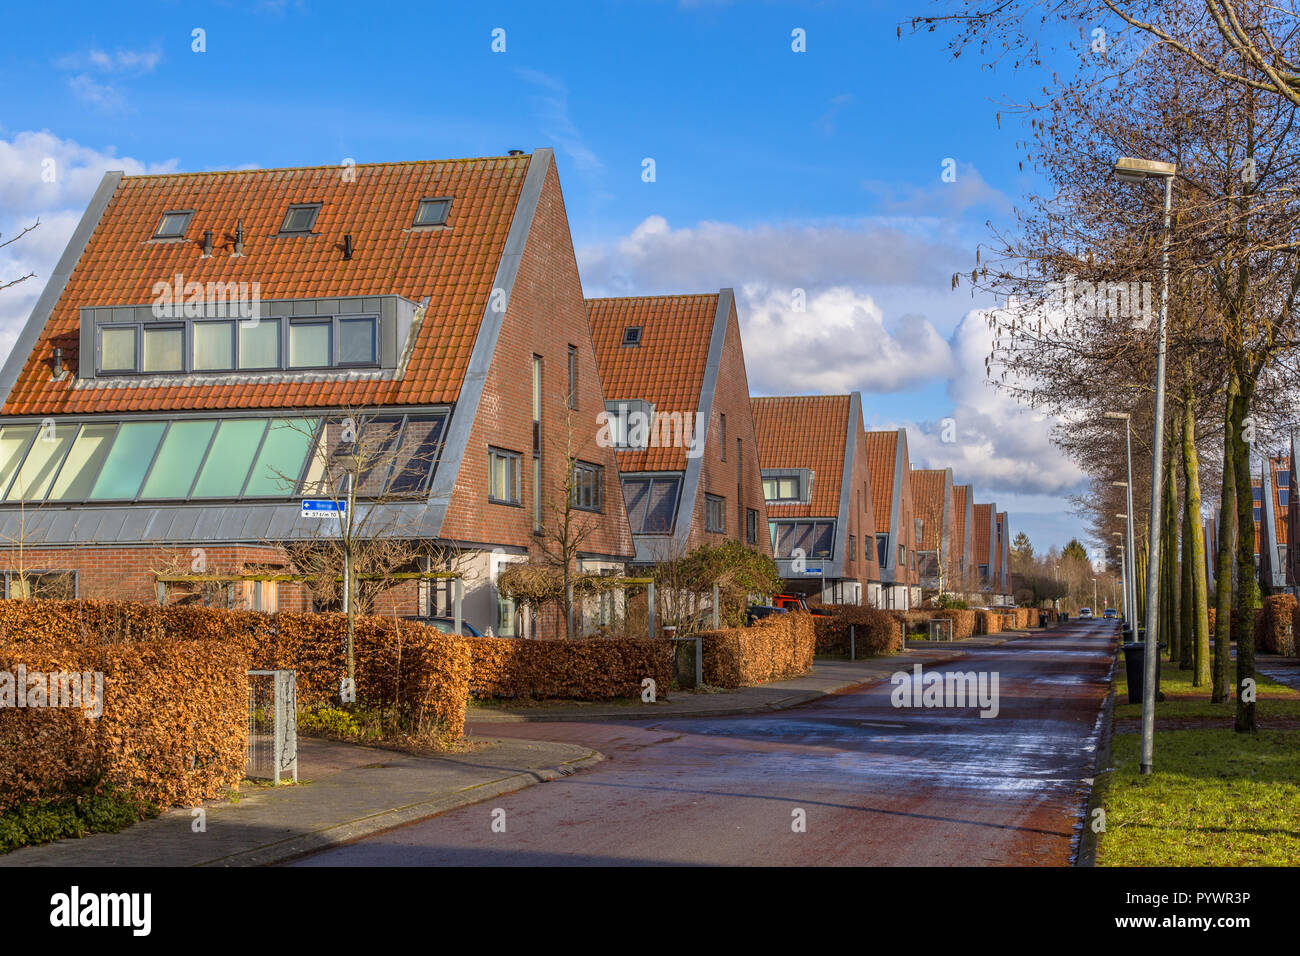 Maisons jumelées famille de classe moyenne dans une zone urbaine écologique naturelle en hiver, Groningen, Pays-Bas Banque D'Images